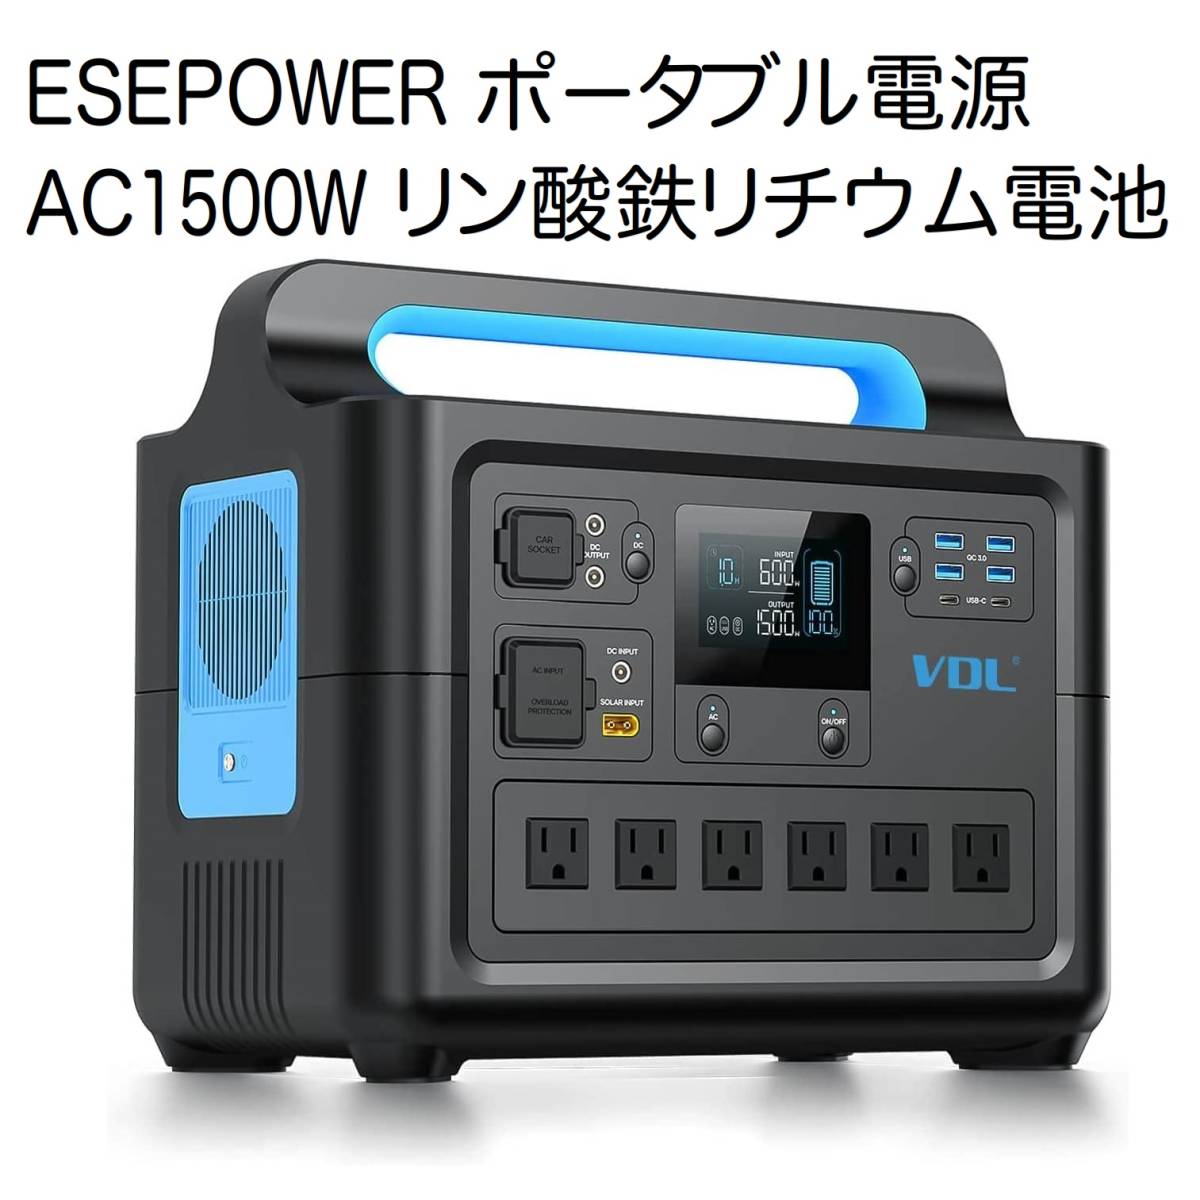 ESEPOWER ポータブル電源 大容量 AC1500W リン酸鉄リチウム電池 www